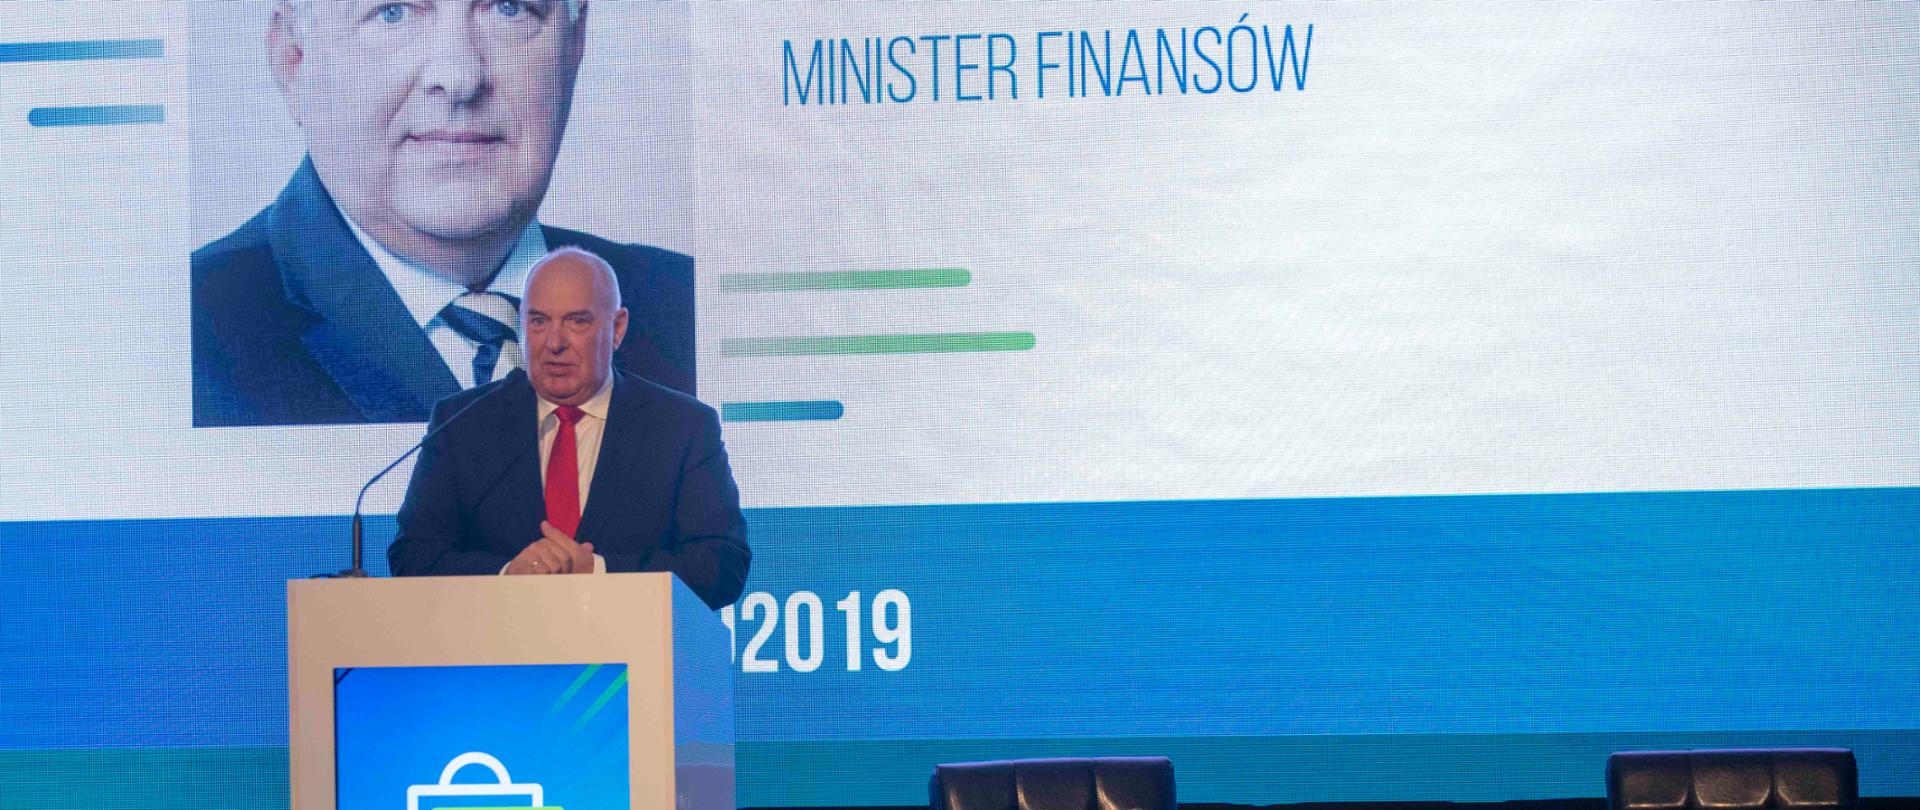 Minister finansów Tadeusz Kościński przemawia z mównicy podczas Kongresu Nowoczesnej Dystrybucji 2019